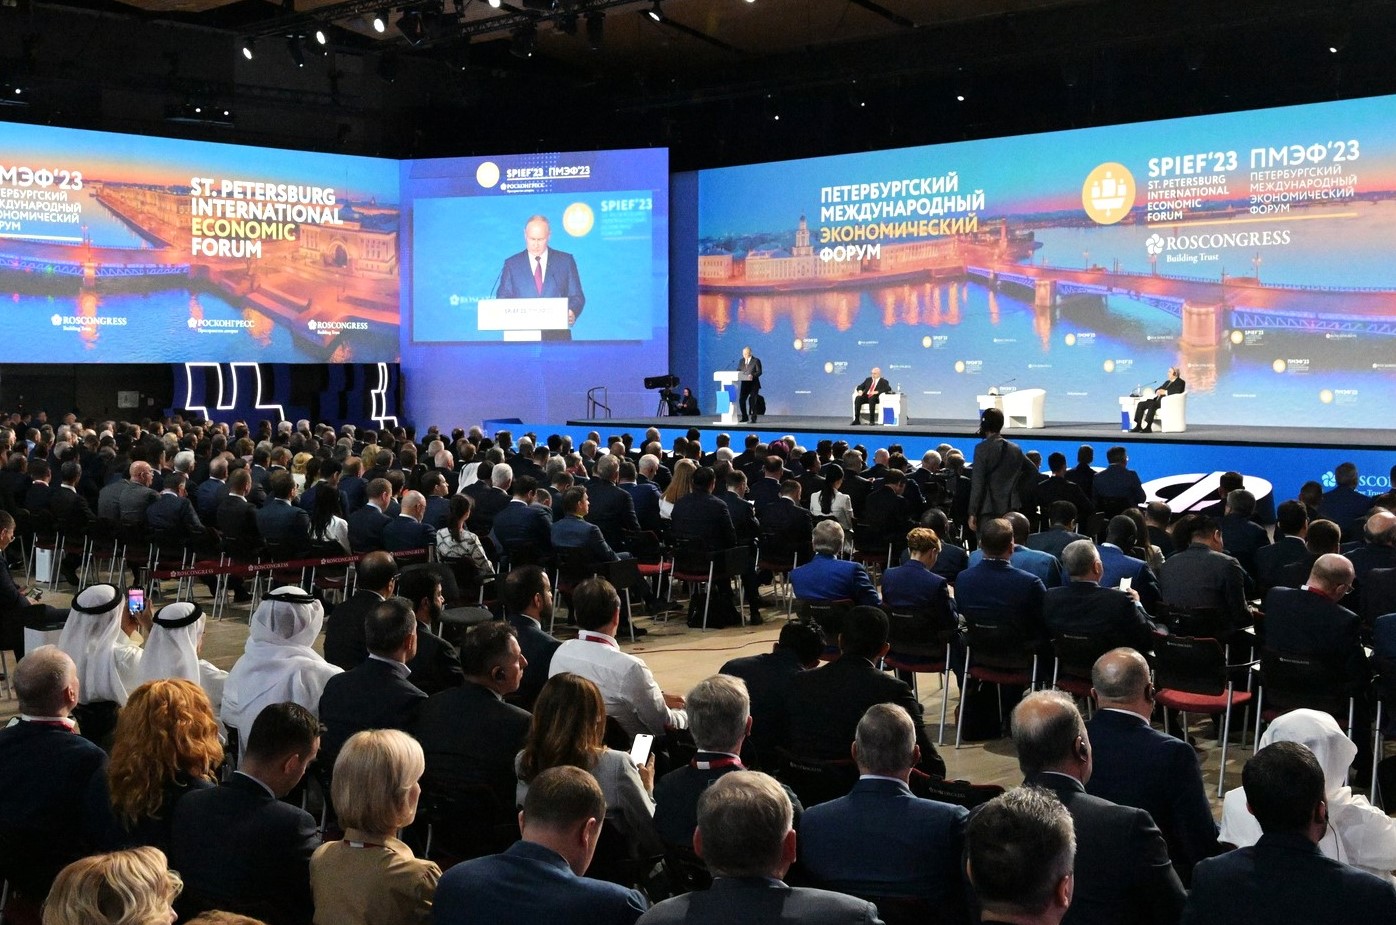 Петербургский международный экономический форум: стабильность перемен и факторы оптимизма